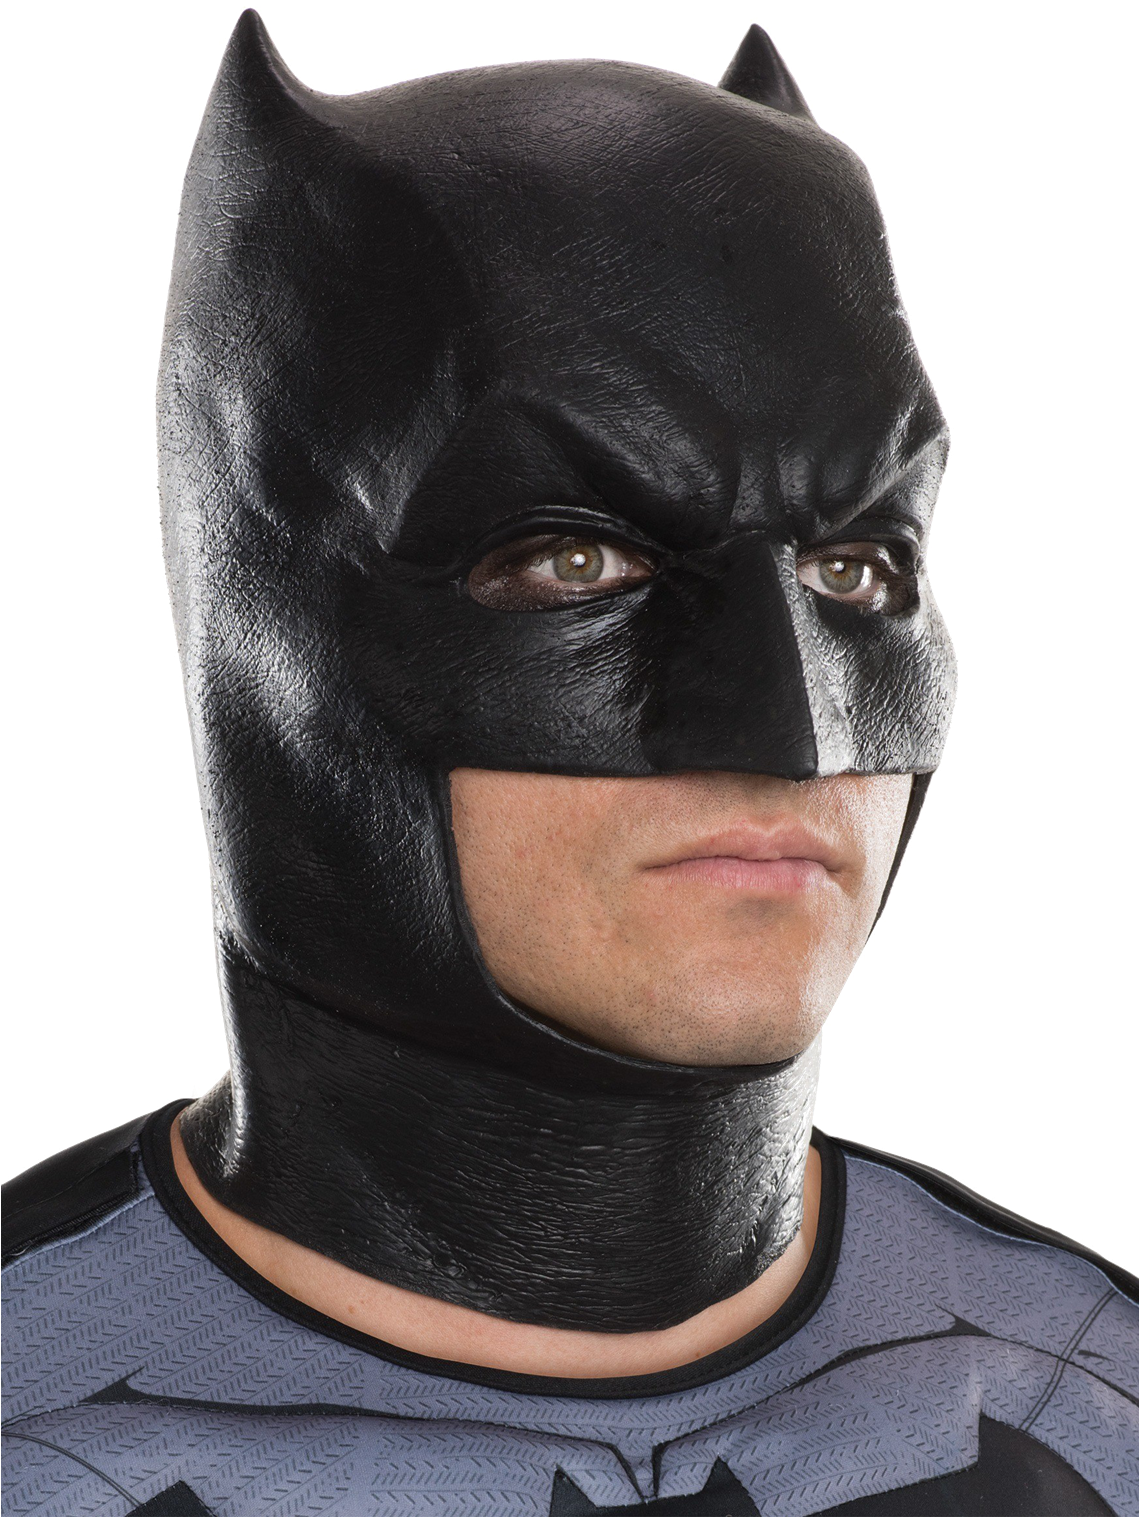 Batman Mask Transparent Images - Batman Mask (1138x1625), Png Download